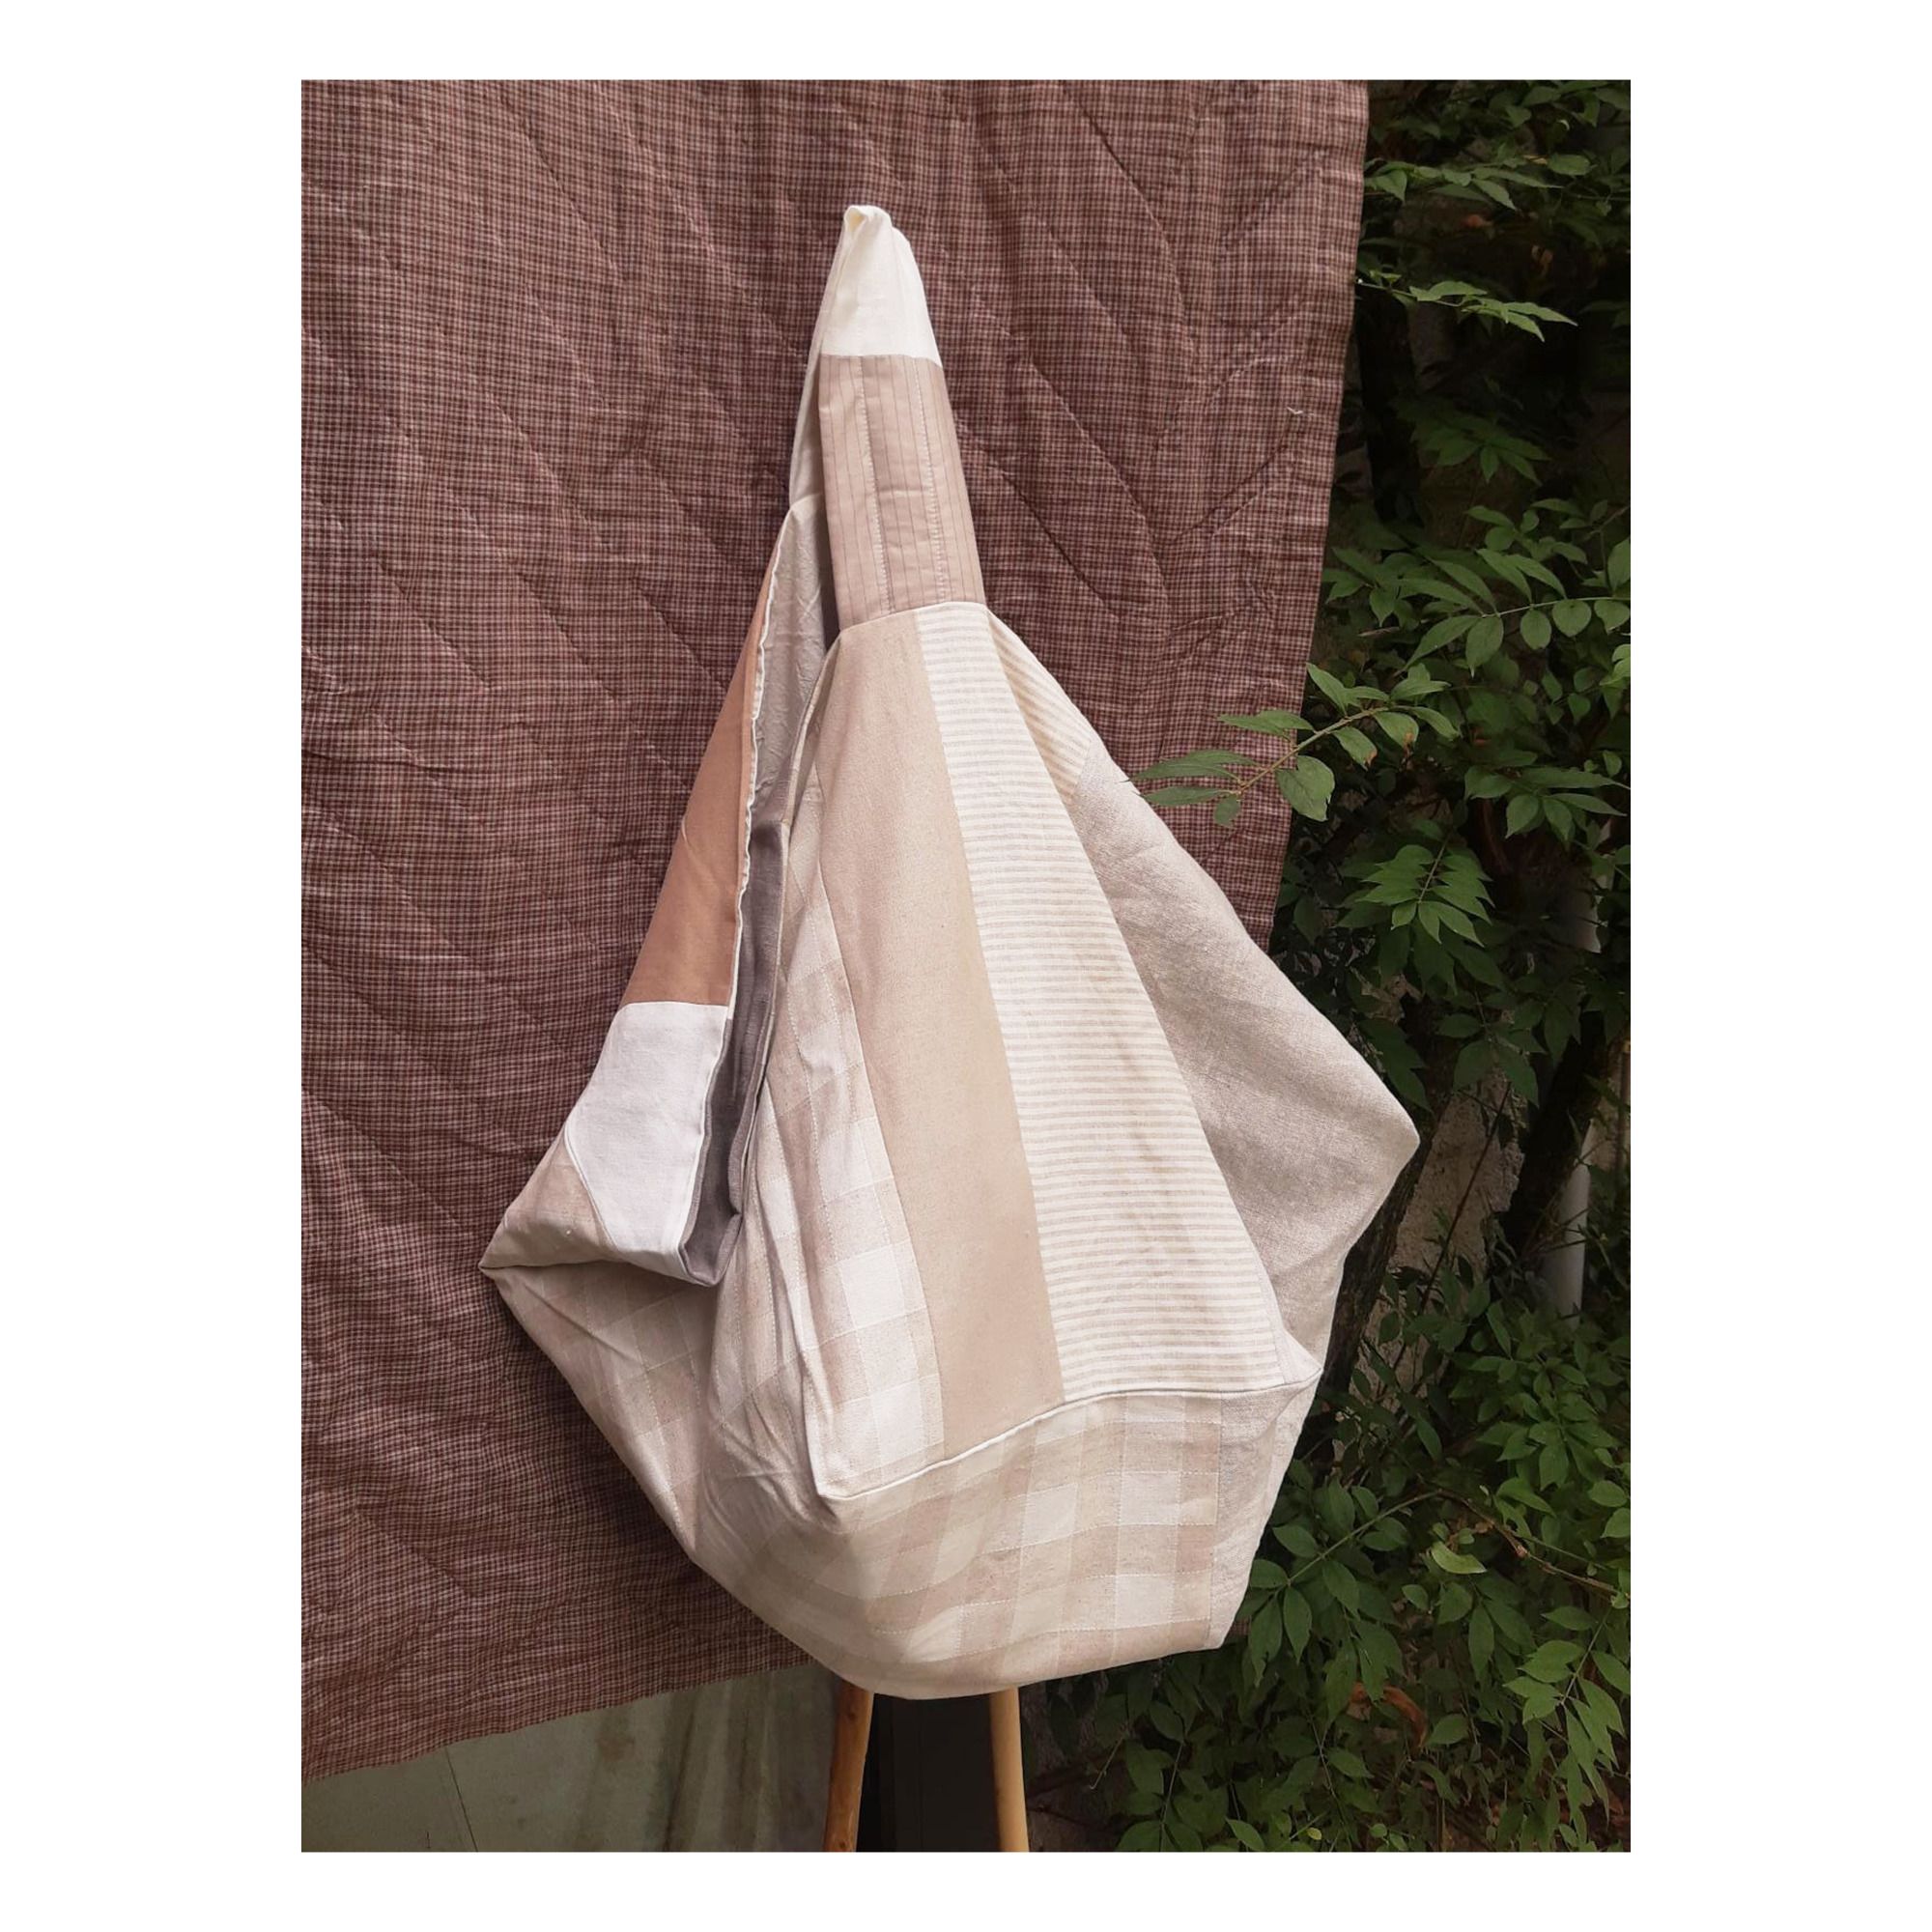 Sac large Mom bag réversible en coton bio (Atelier Neeltje Geurtsen) - Image 1